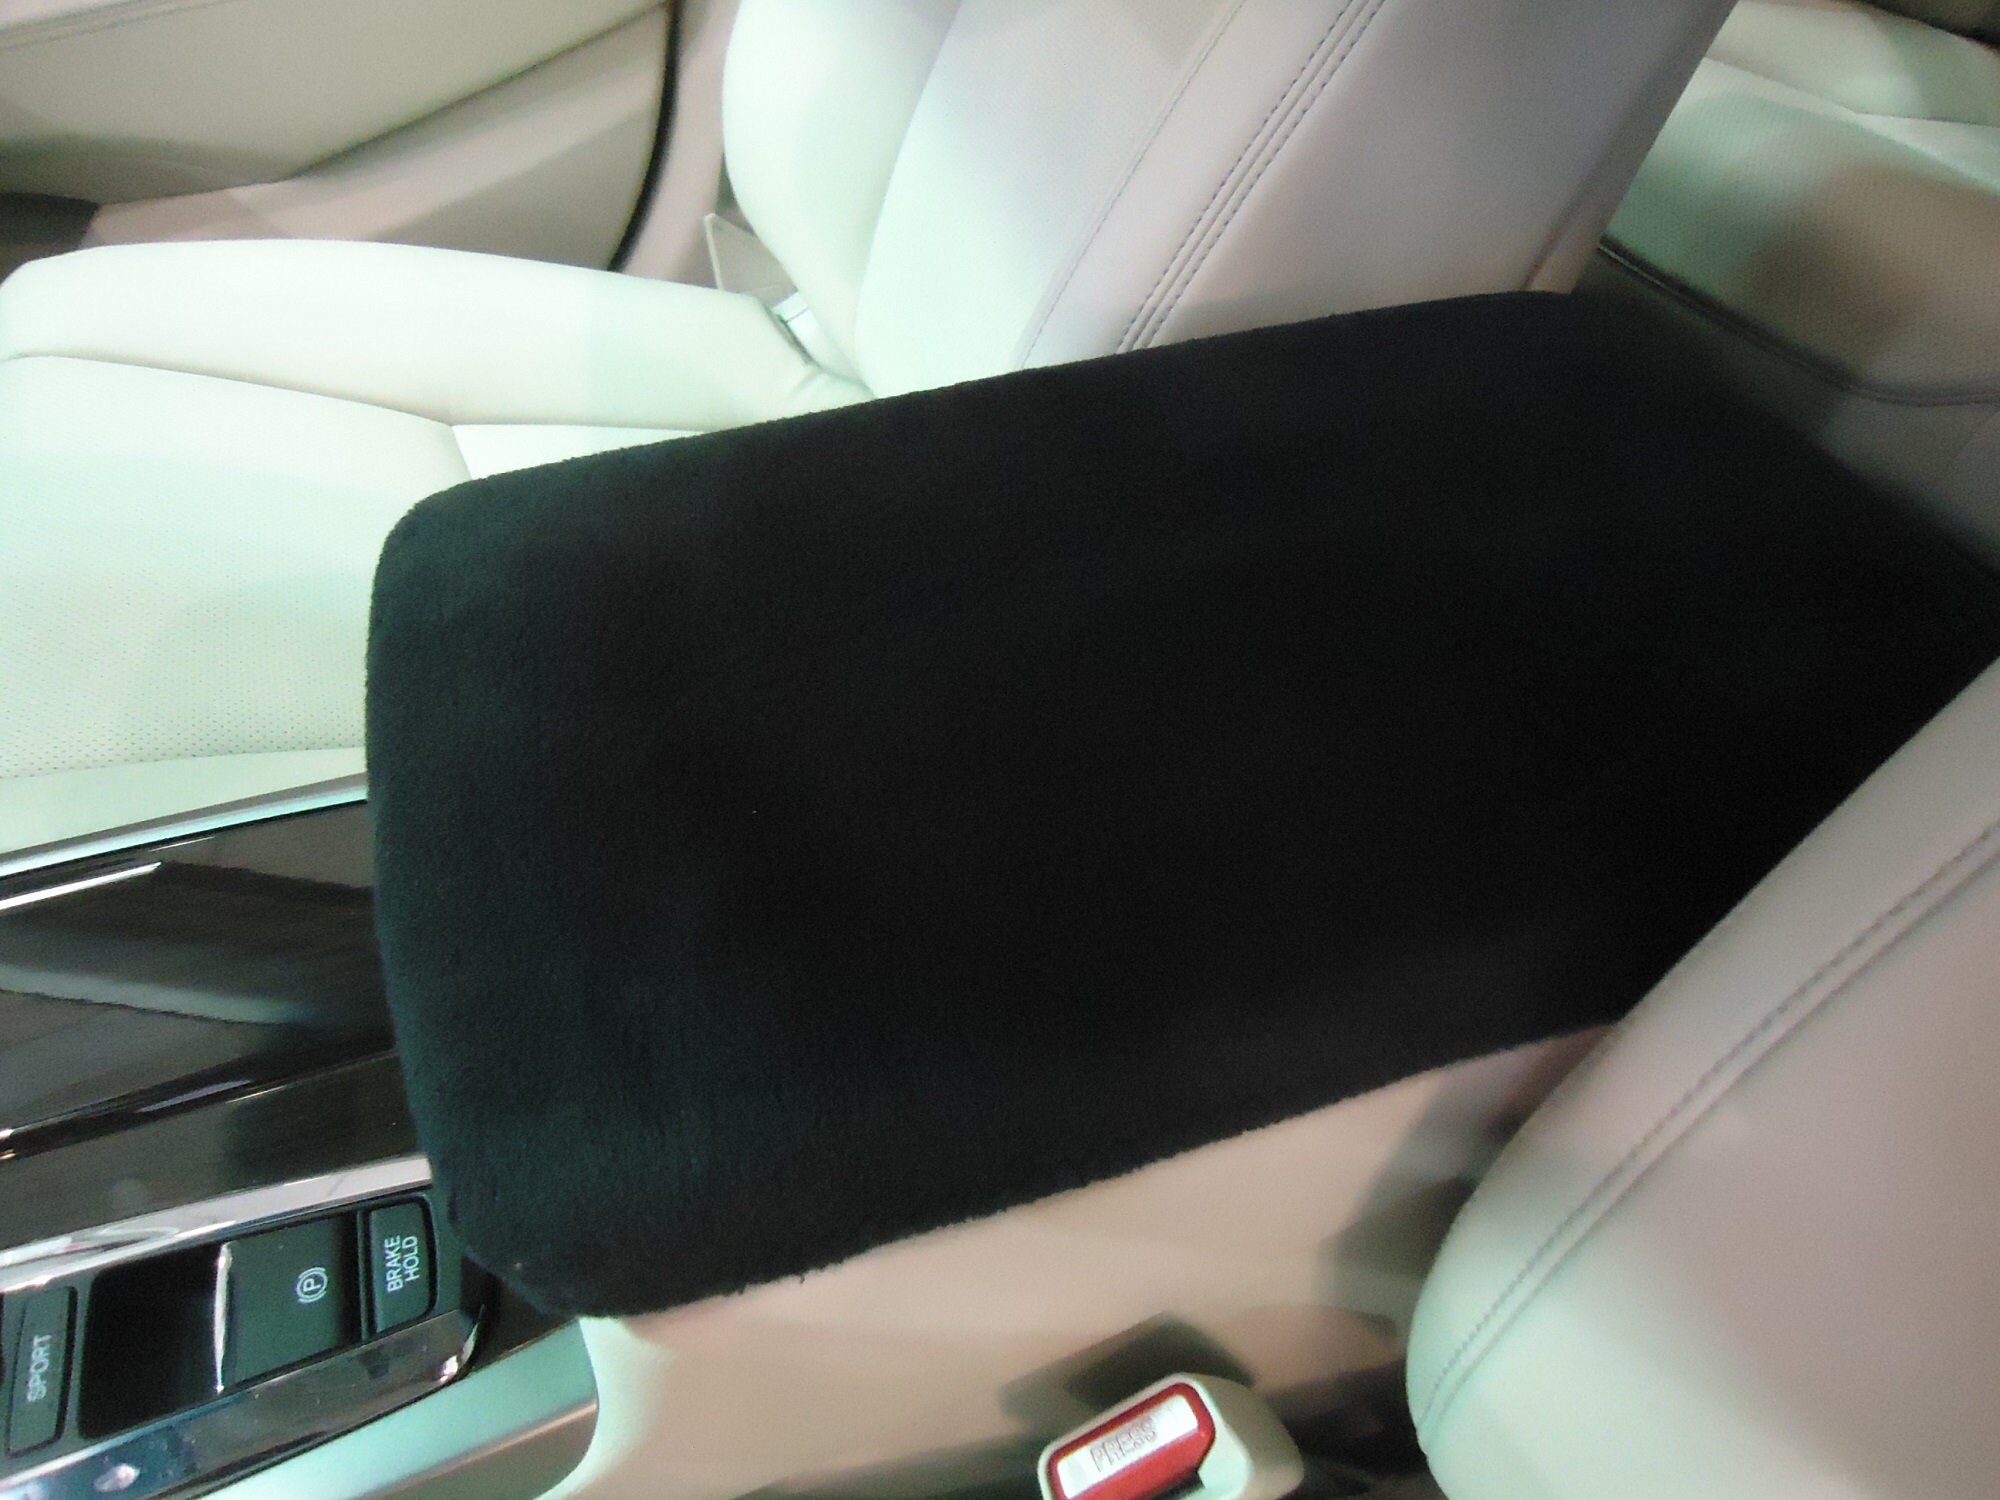 Autozubehör 1 stücke Autositz Back Cover Protector Fit für Kinder